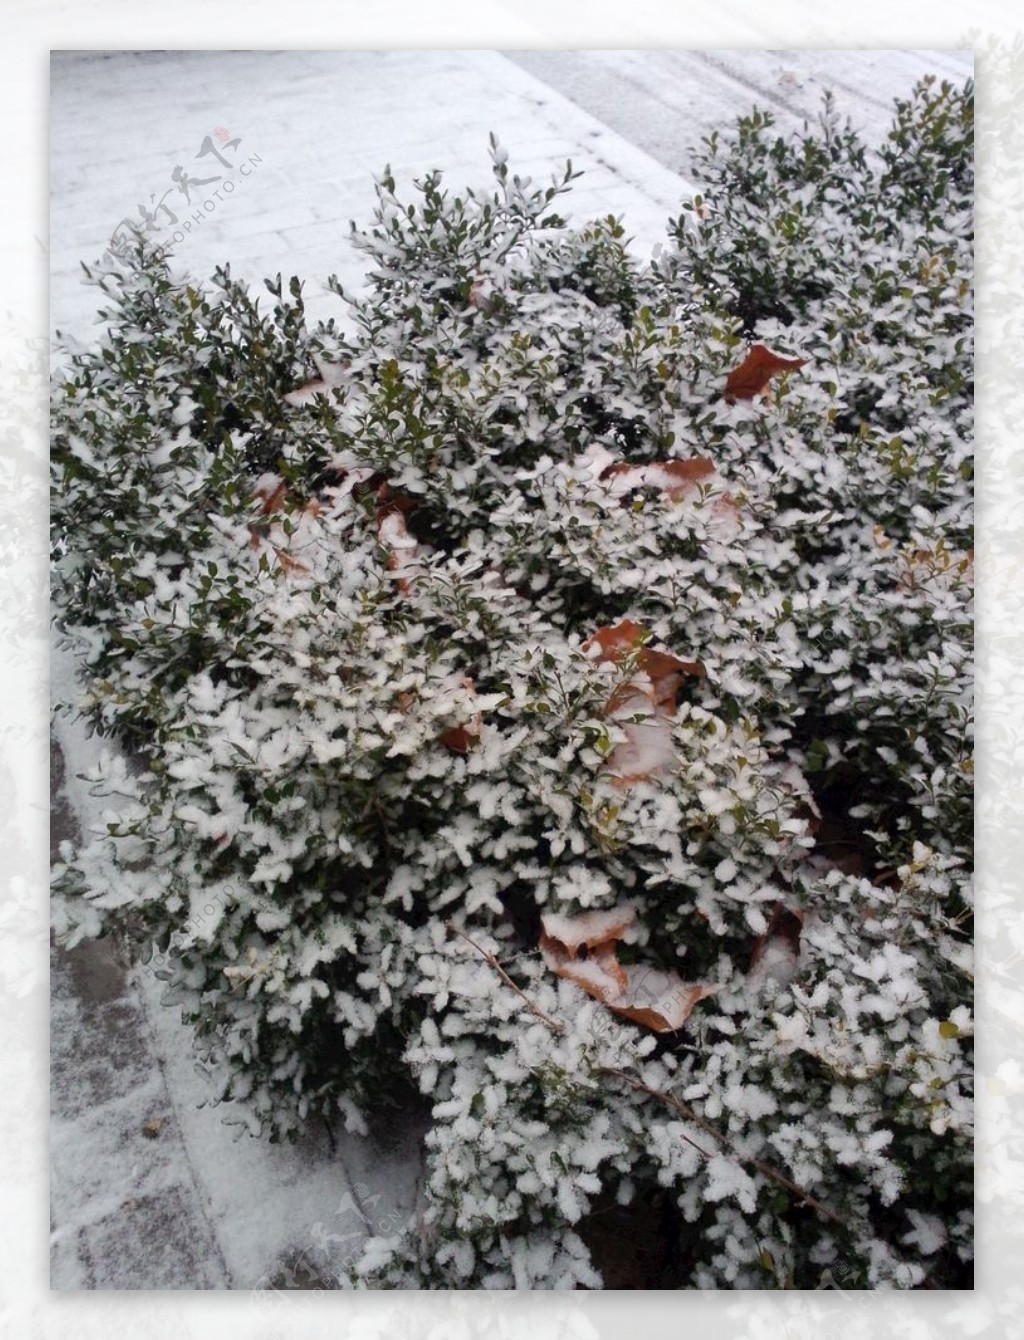 树叶上的积雪